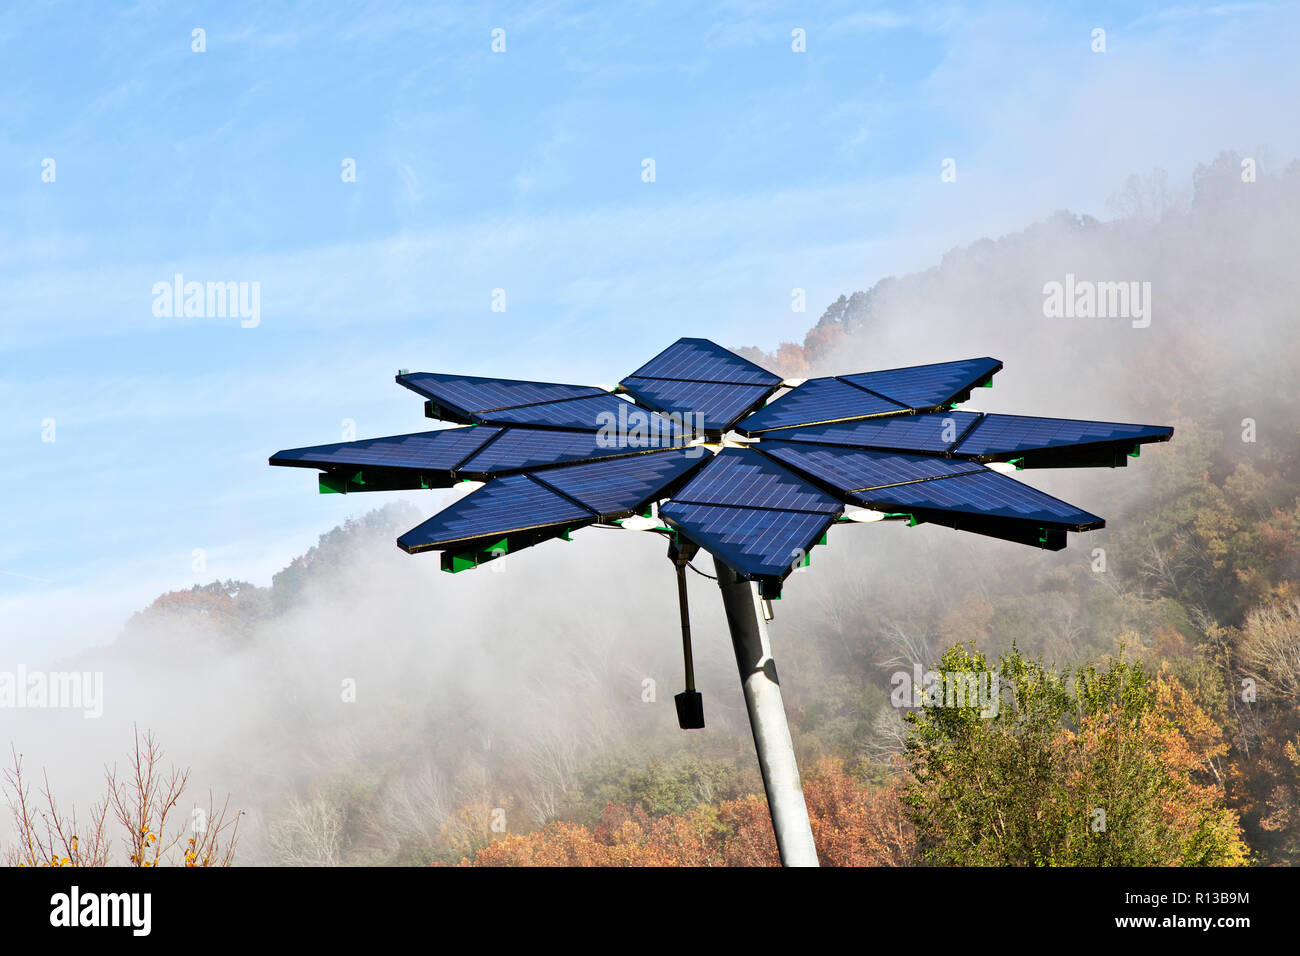 Matriz Solar identificado como "Solar Fotovoltaica Flair", facilita la estación de recarga de vehículos eléctricos, disipando la niebla matutina. Foto de stock